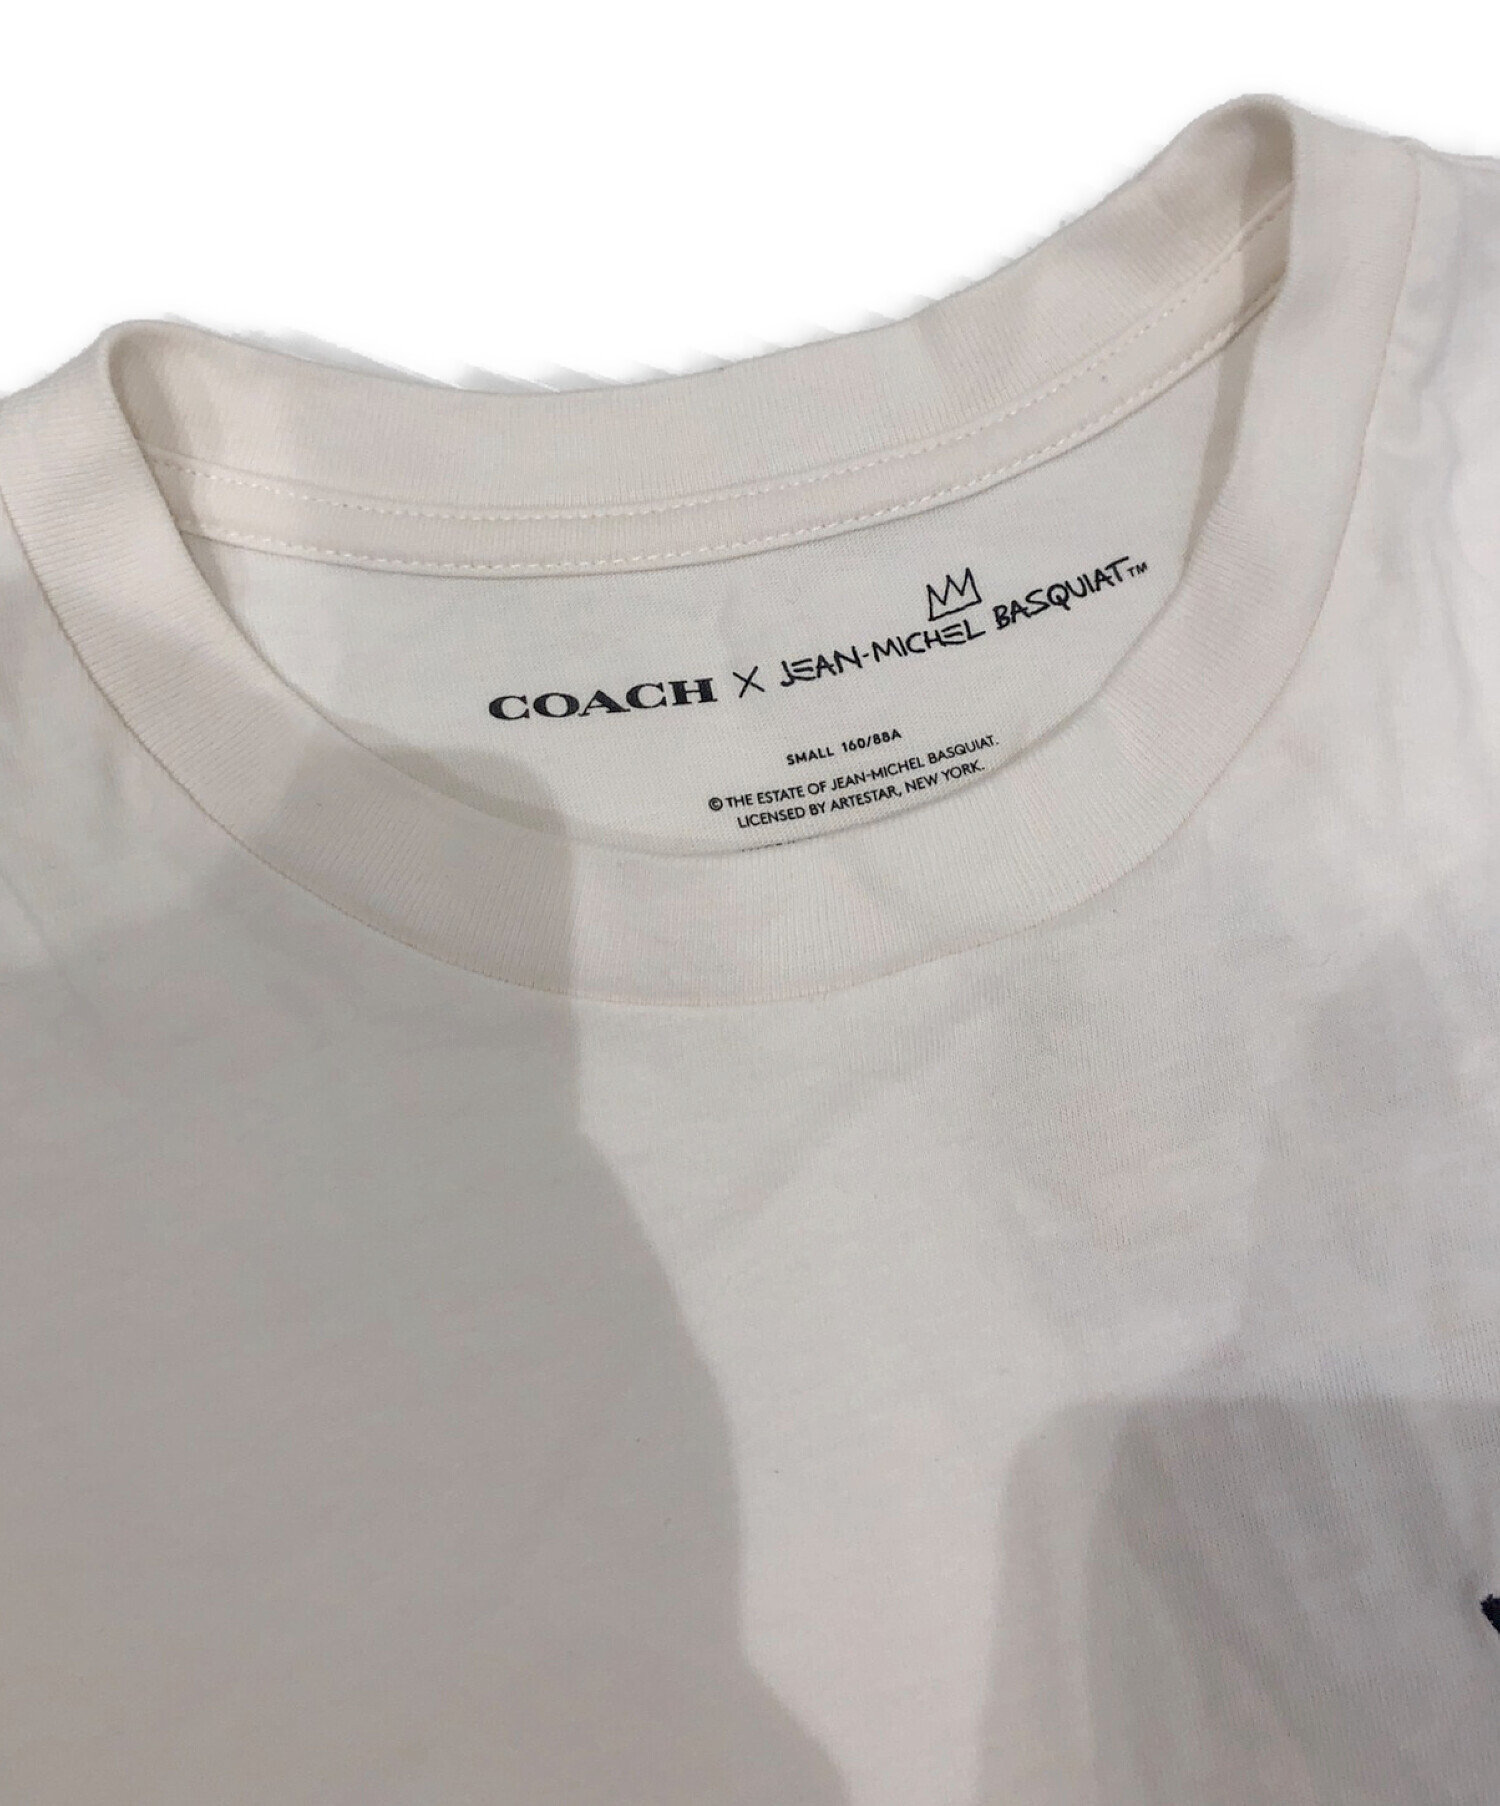 COACH (コーチ) JEAN-MICHEL (ジャン・ミッシェル) バスキアTシャツ ホワイト サイズ:SMALL